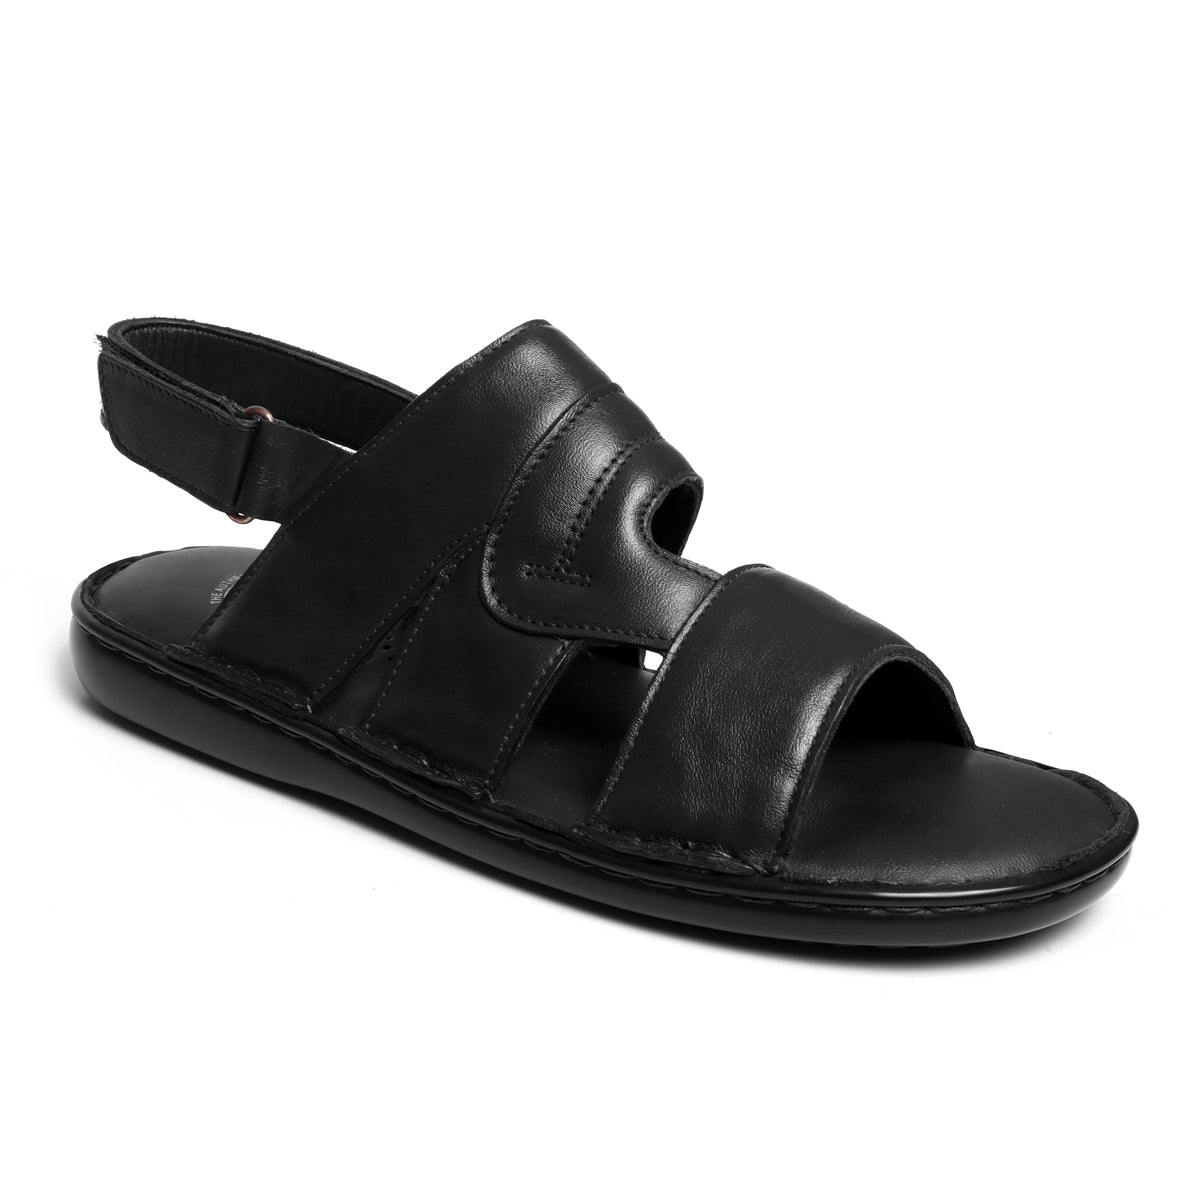 mens open toe sandals